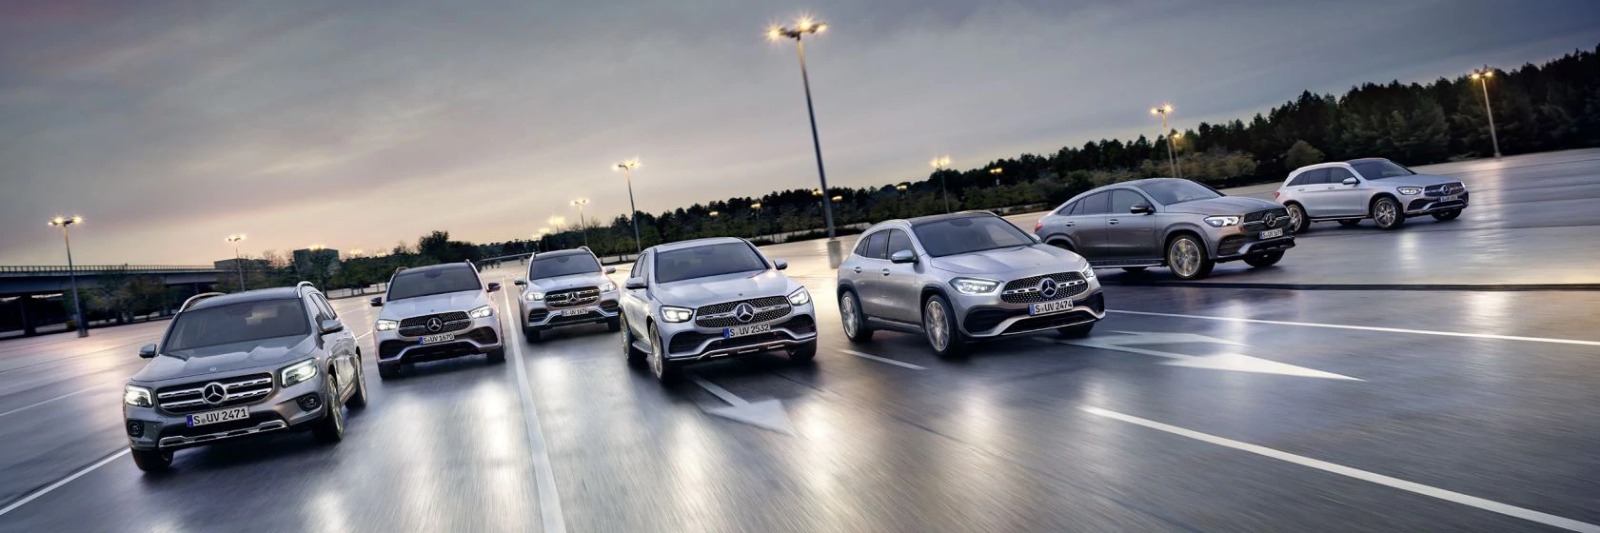 Nuova gamma SUV Mercedes-Benz. La forza dello stile.